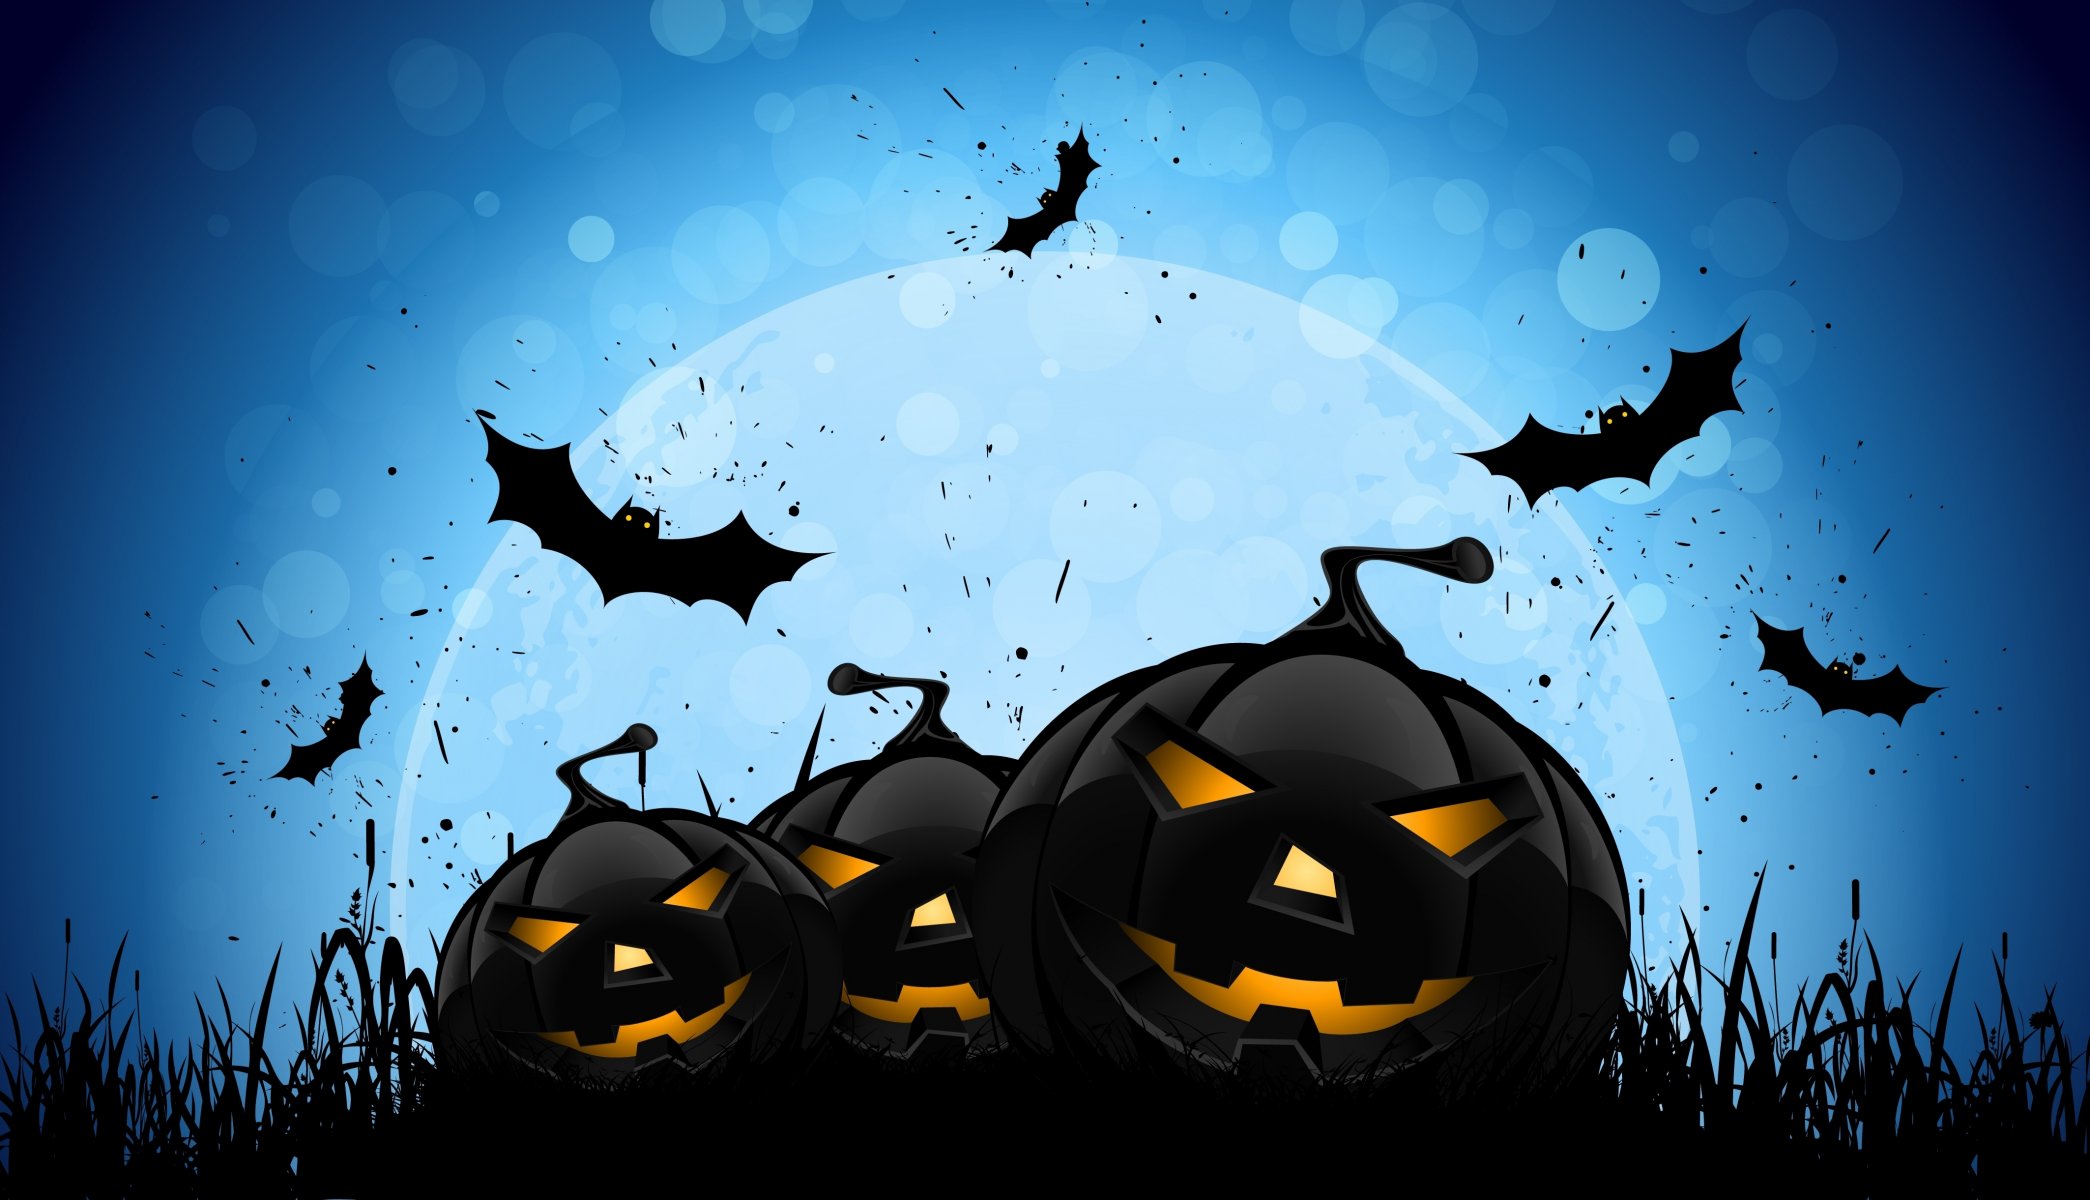 хэллоуин жутко страшно ужас злые тыквы летучие мыши полная луна полночь зло тыквы летучих мышей